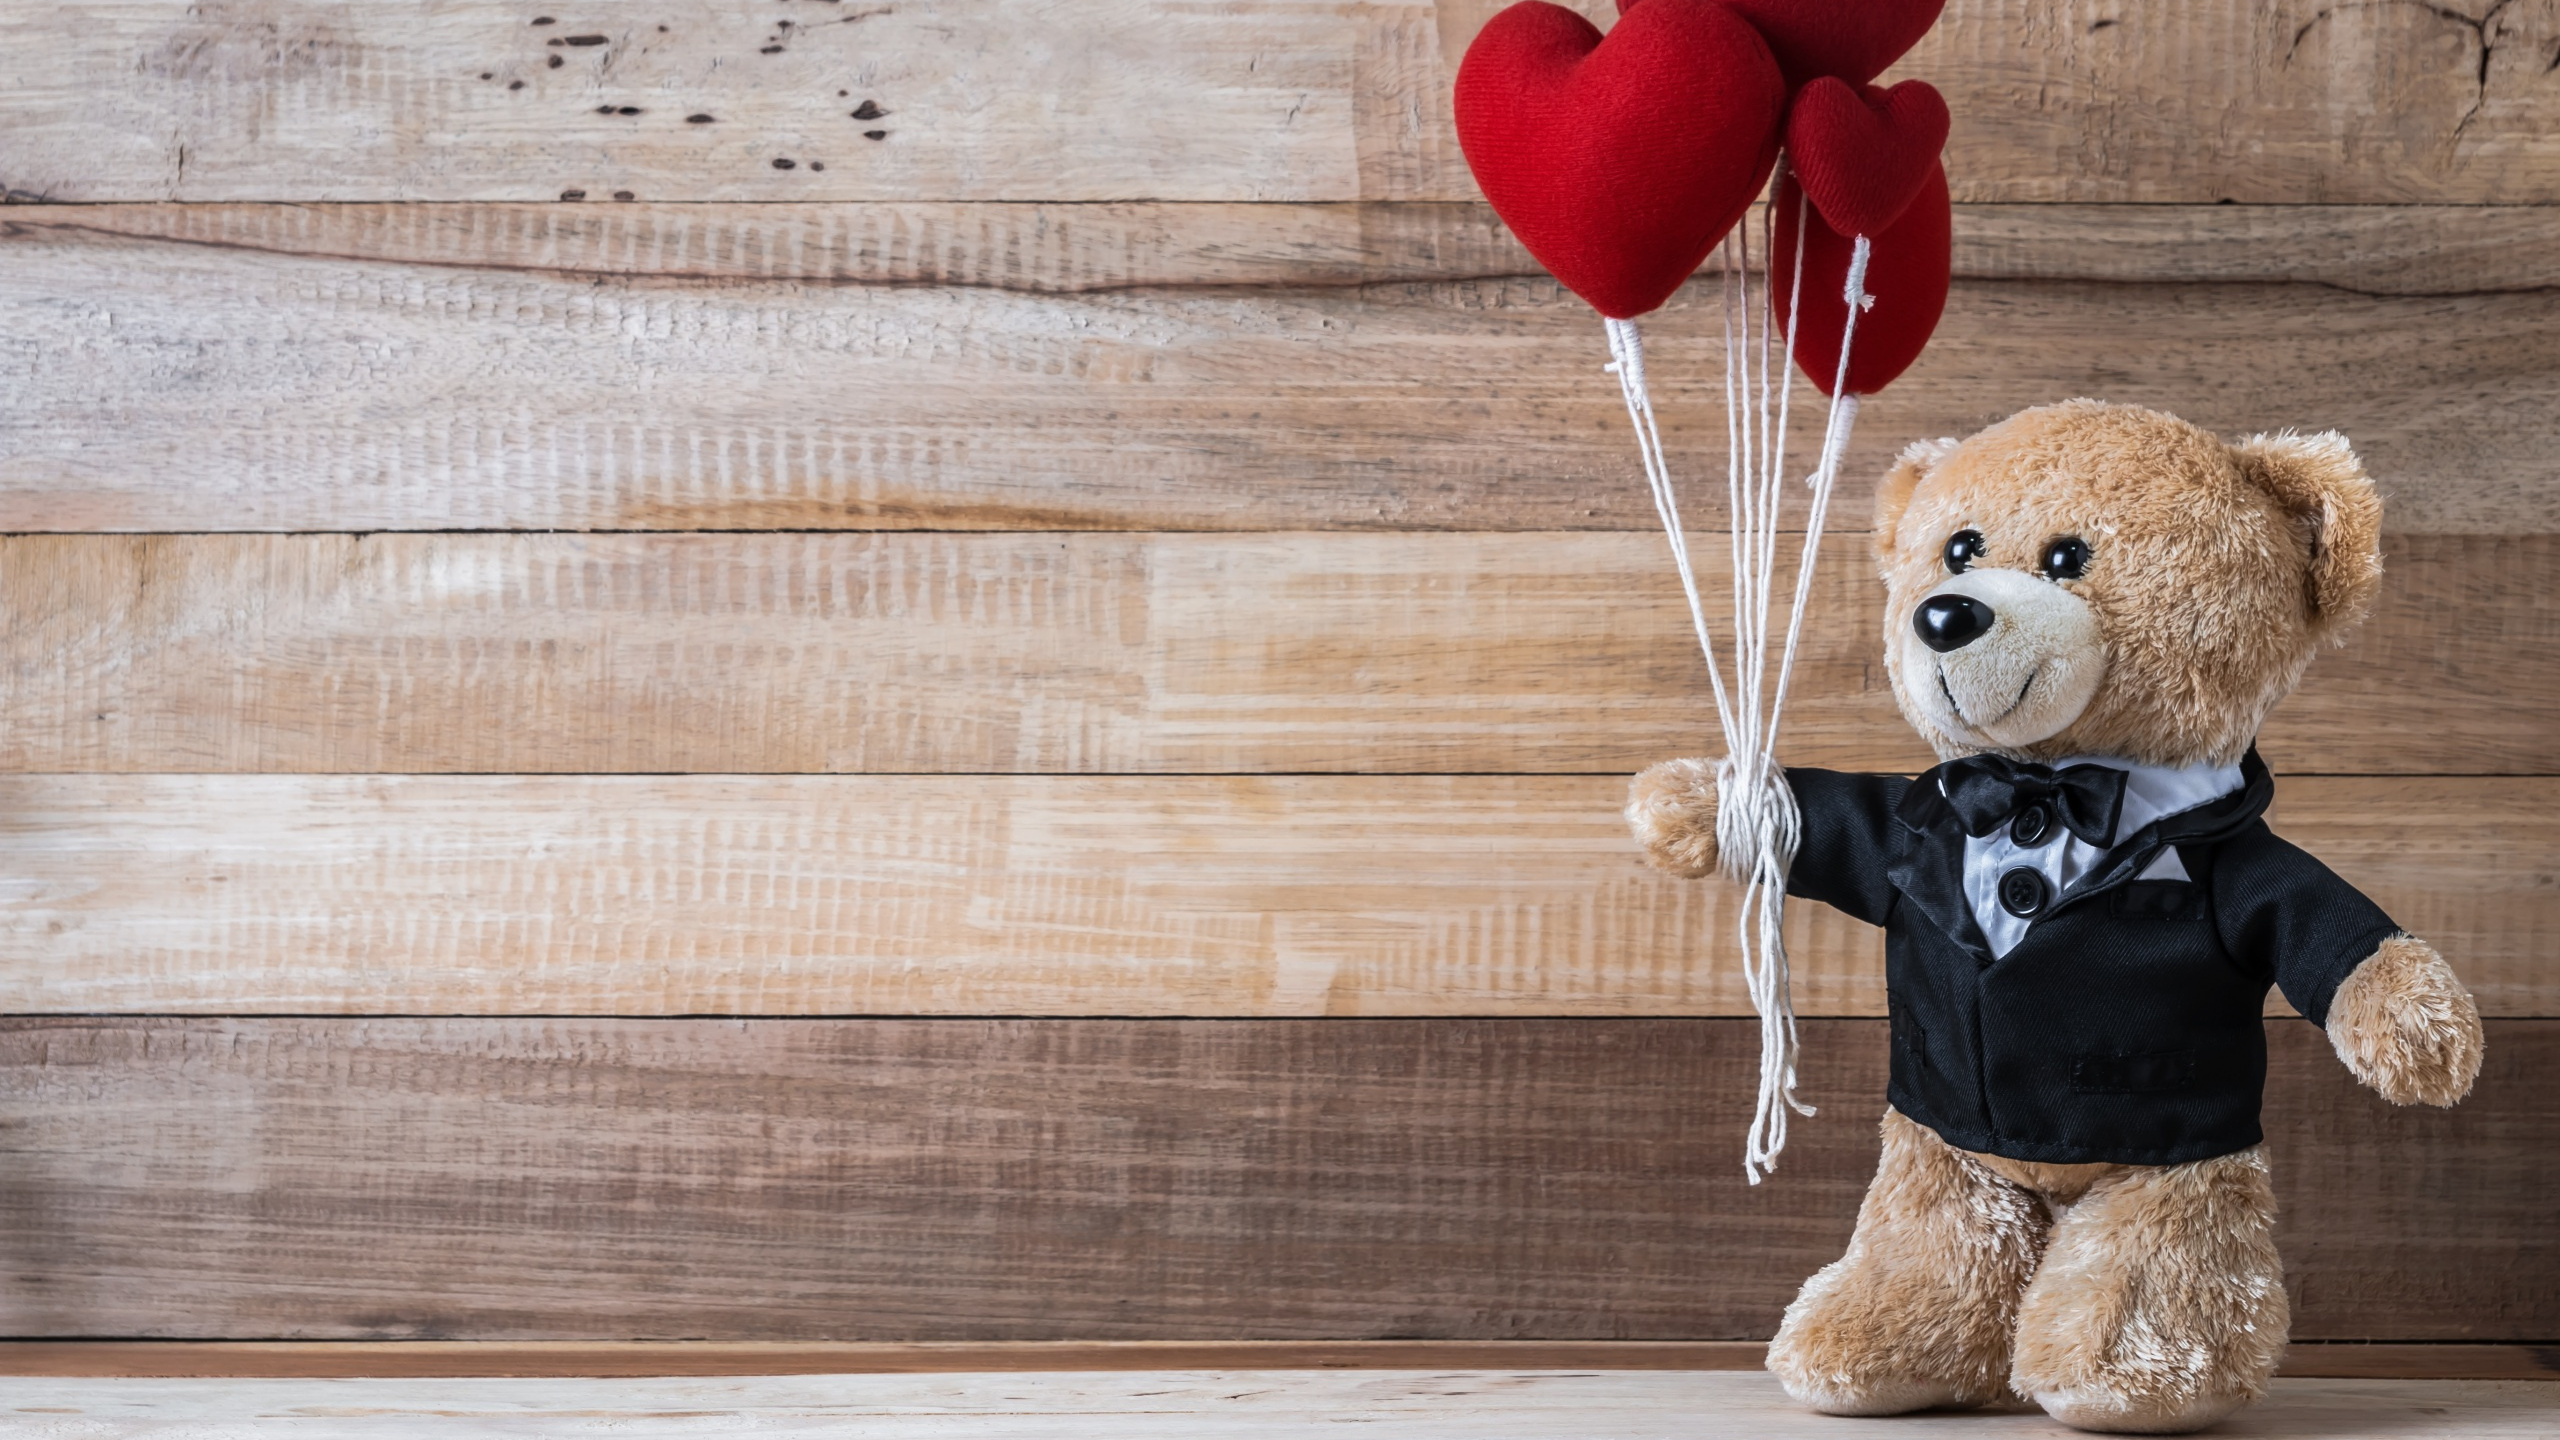 泰迪熊, 毛绒玩具, 爱情, 心脏, 熊 壁纸 2560x1440 允许